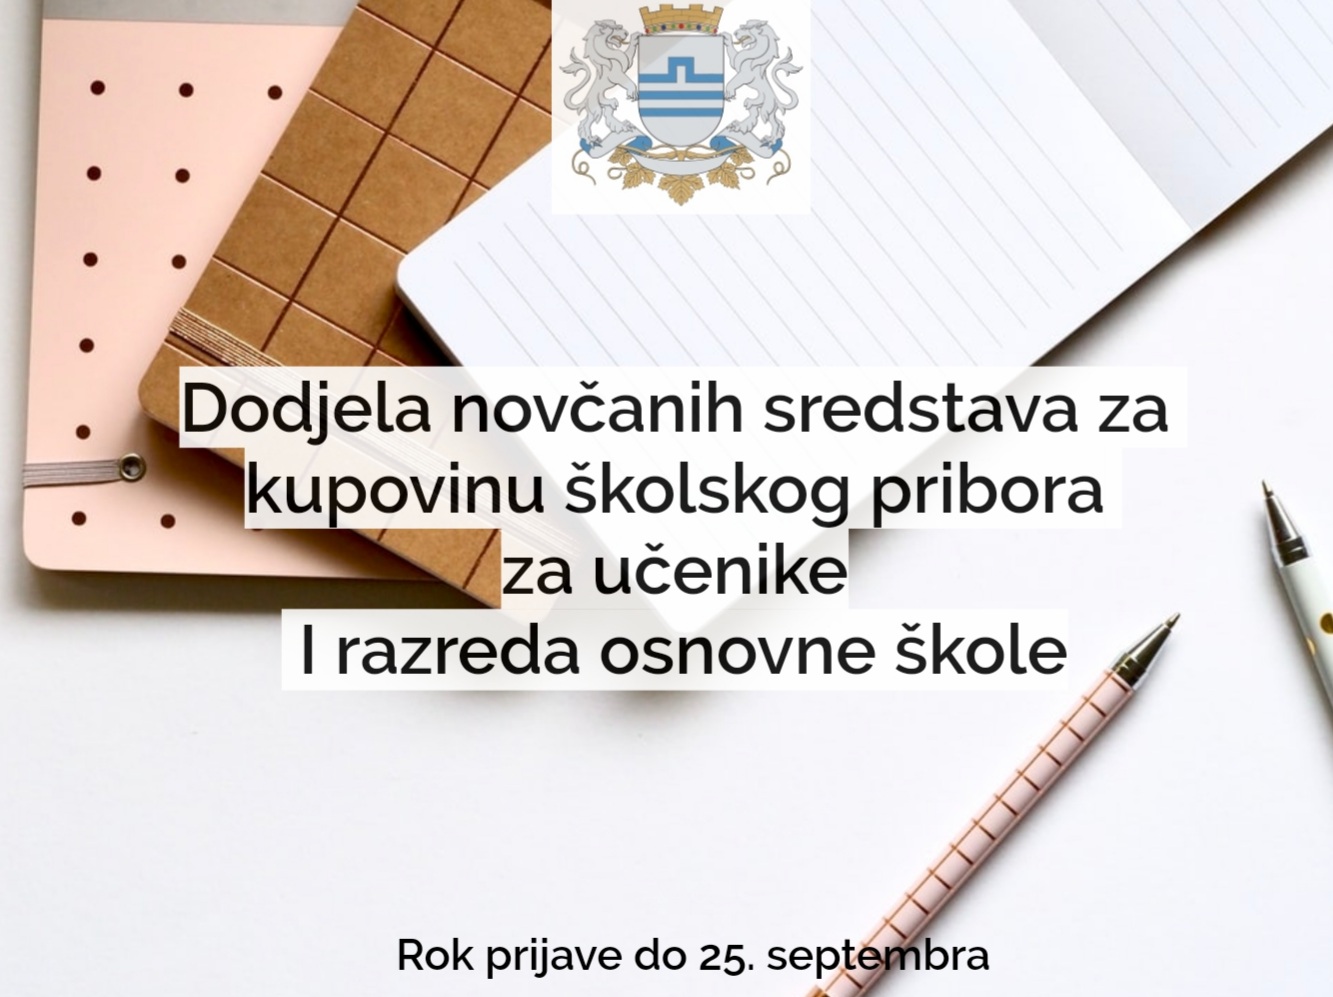 Prijava za jednokratnu novčanu pomoć za kupovinu školskog pribora za podgoričke prvake do 25. septembra